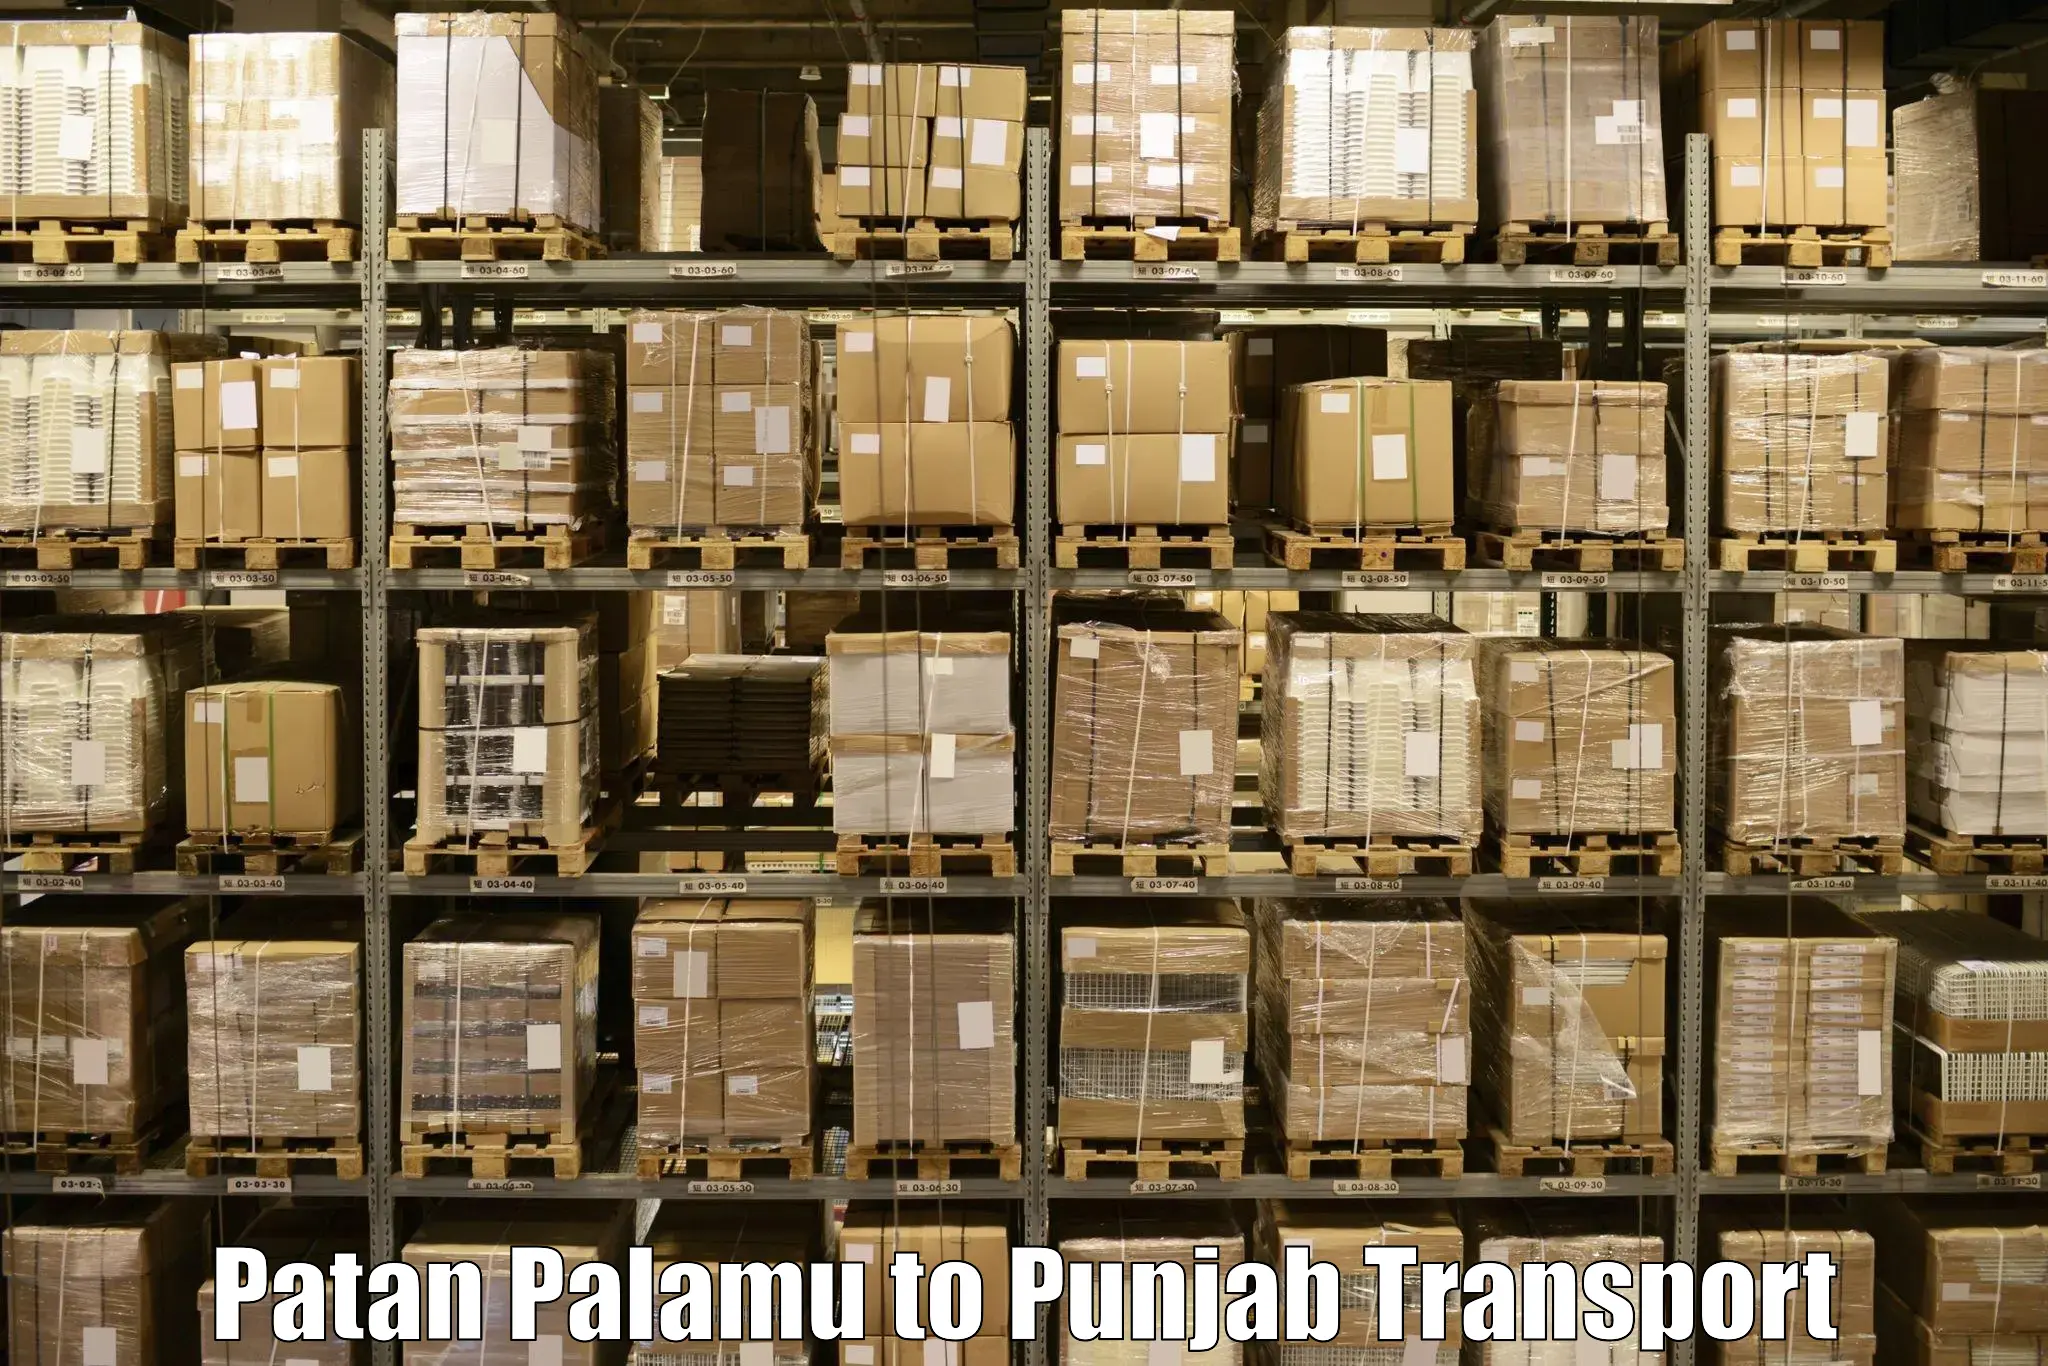 Furniture transport service Patan Palamu to Raikot